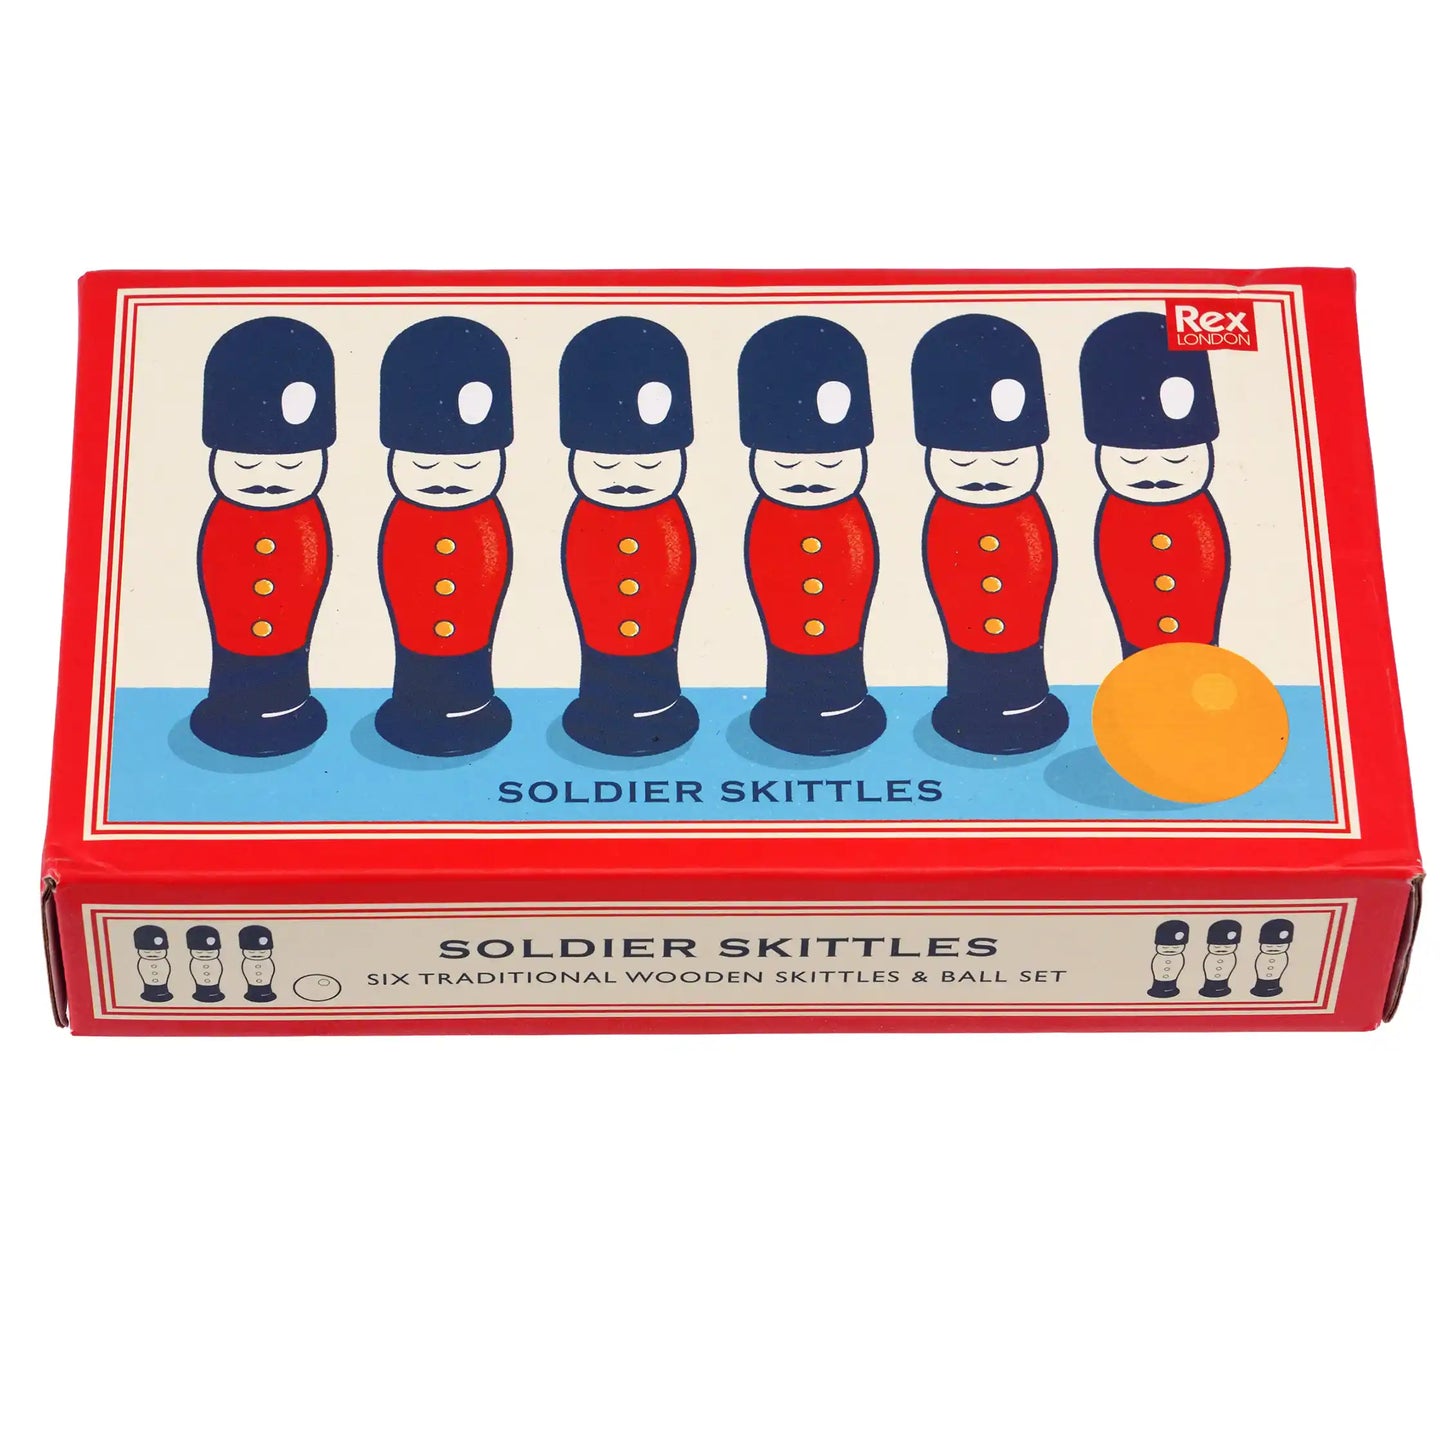 Heliotique | Rex London Soldier Skittles Wooden Toy